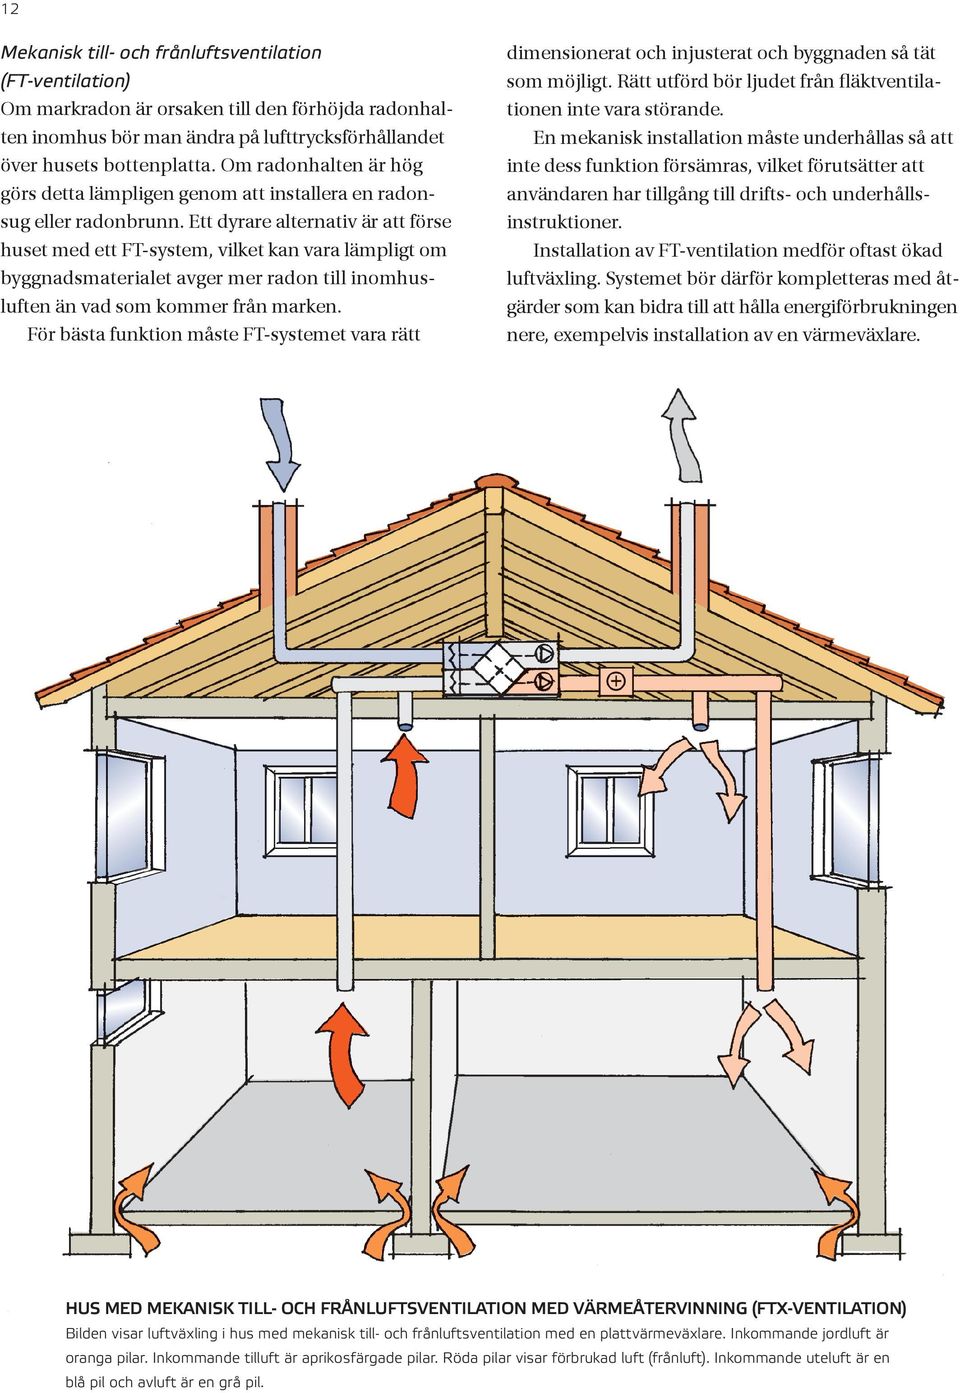 Ett dyrare alternativ är att förse huset med ett FT-system, vilket kan vara lämpligt om byggnadsmaterialet avger mer radon till inomhusluften än vad som kommer från marken.